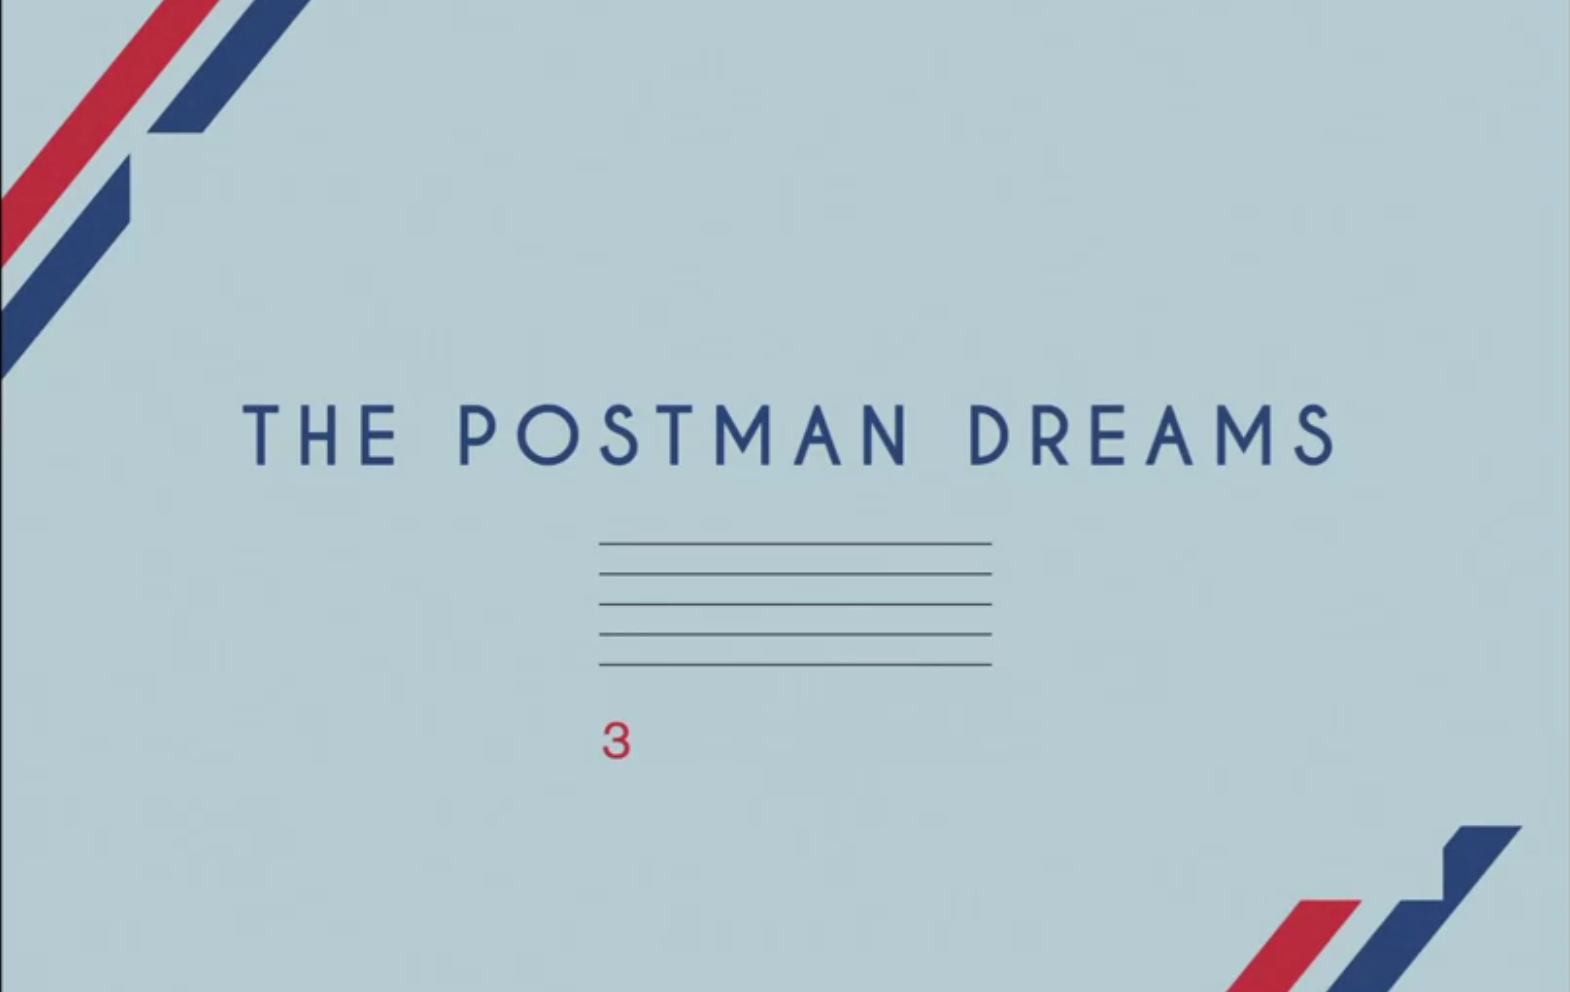 The Postman Dreams by Prada via happymundane.com